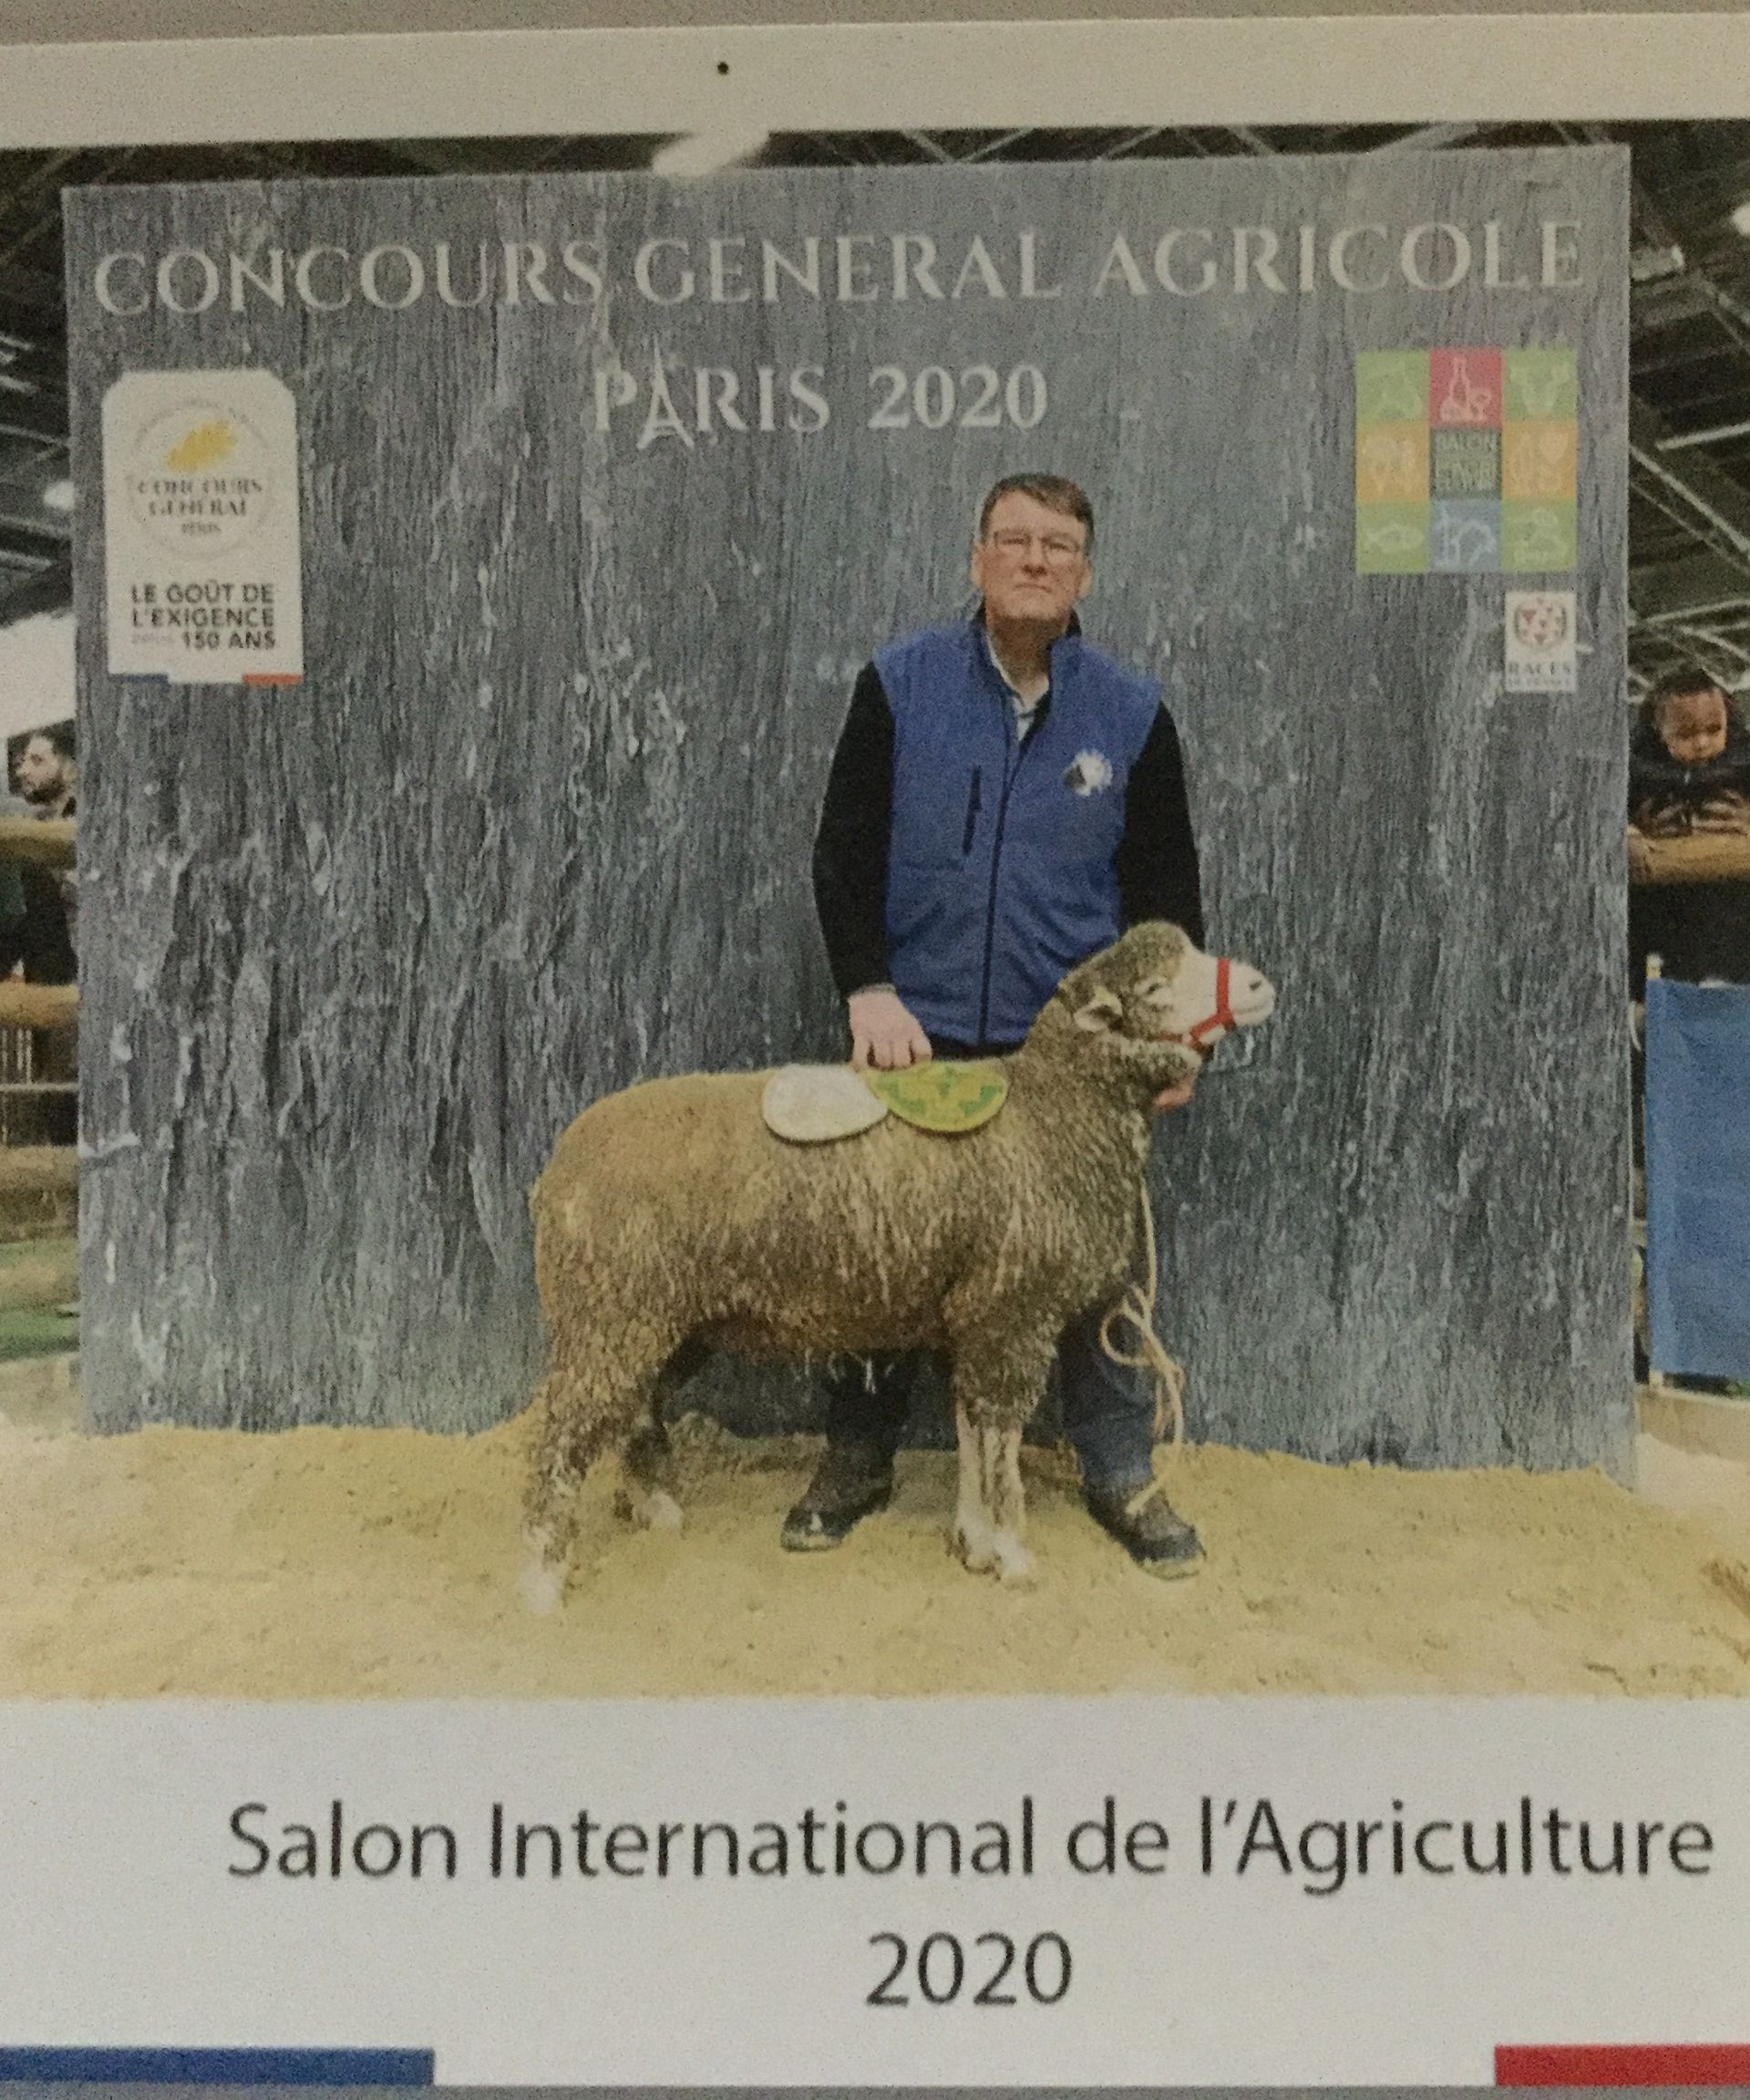 Concour agricole paris 2020 - Elavege de Moutons